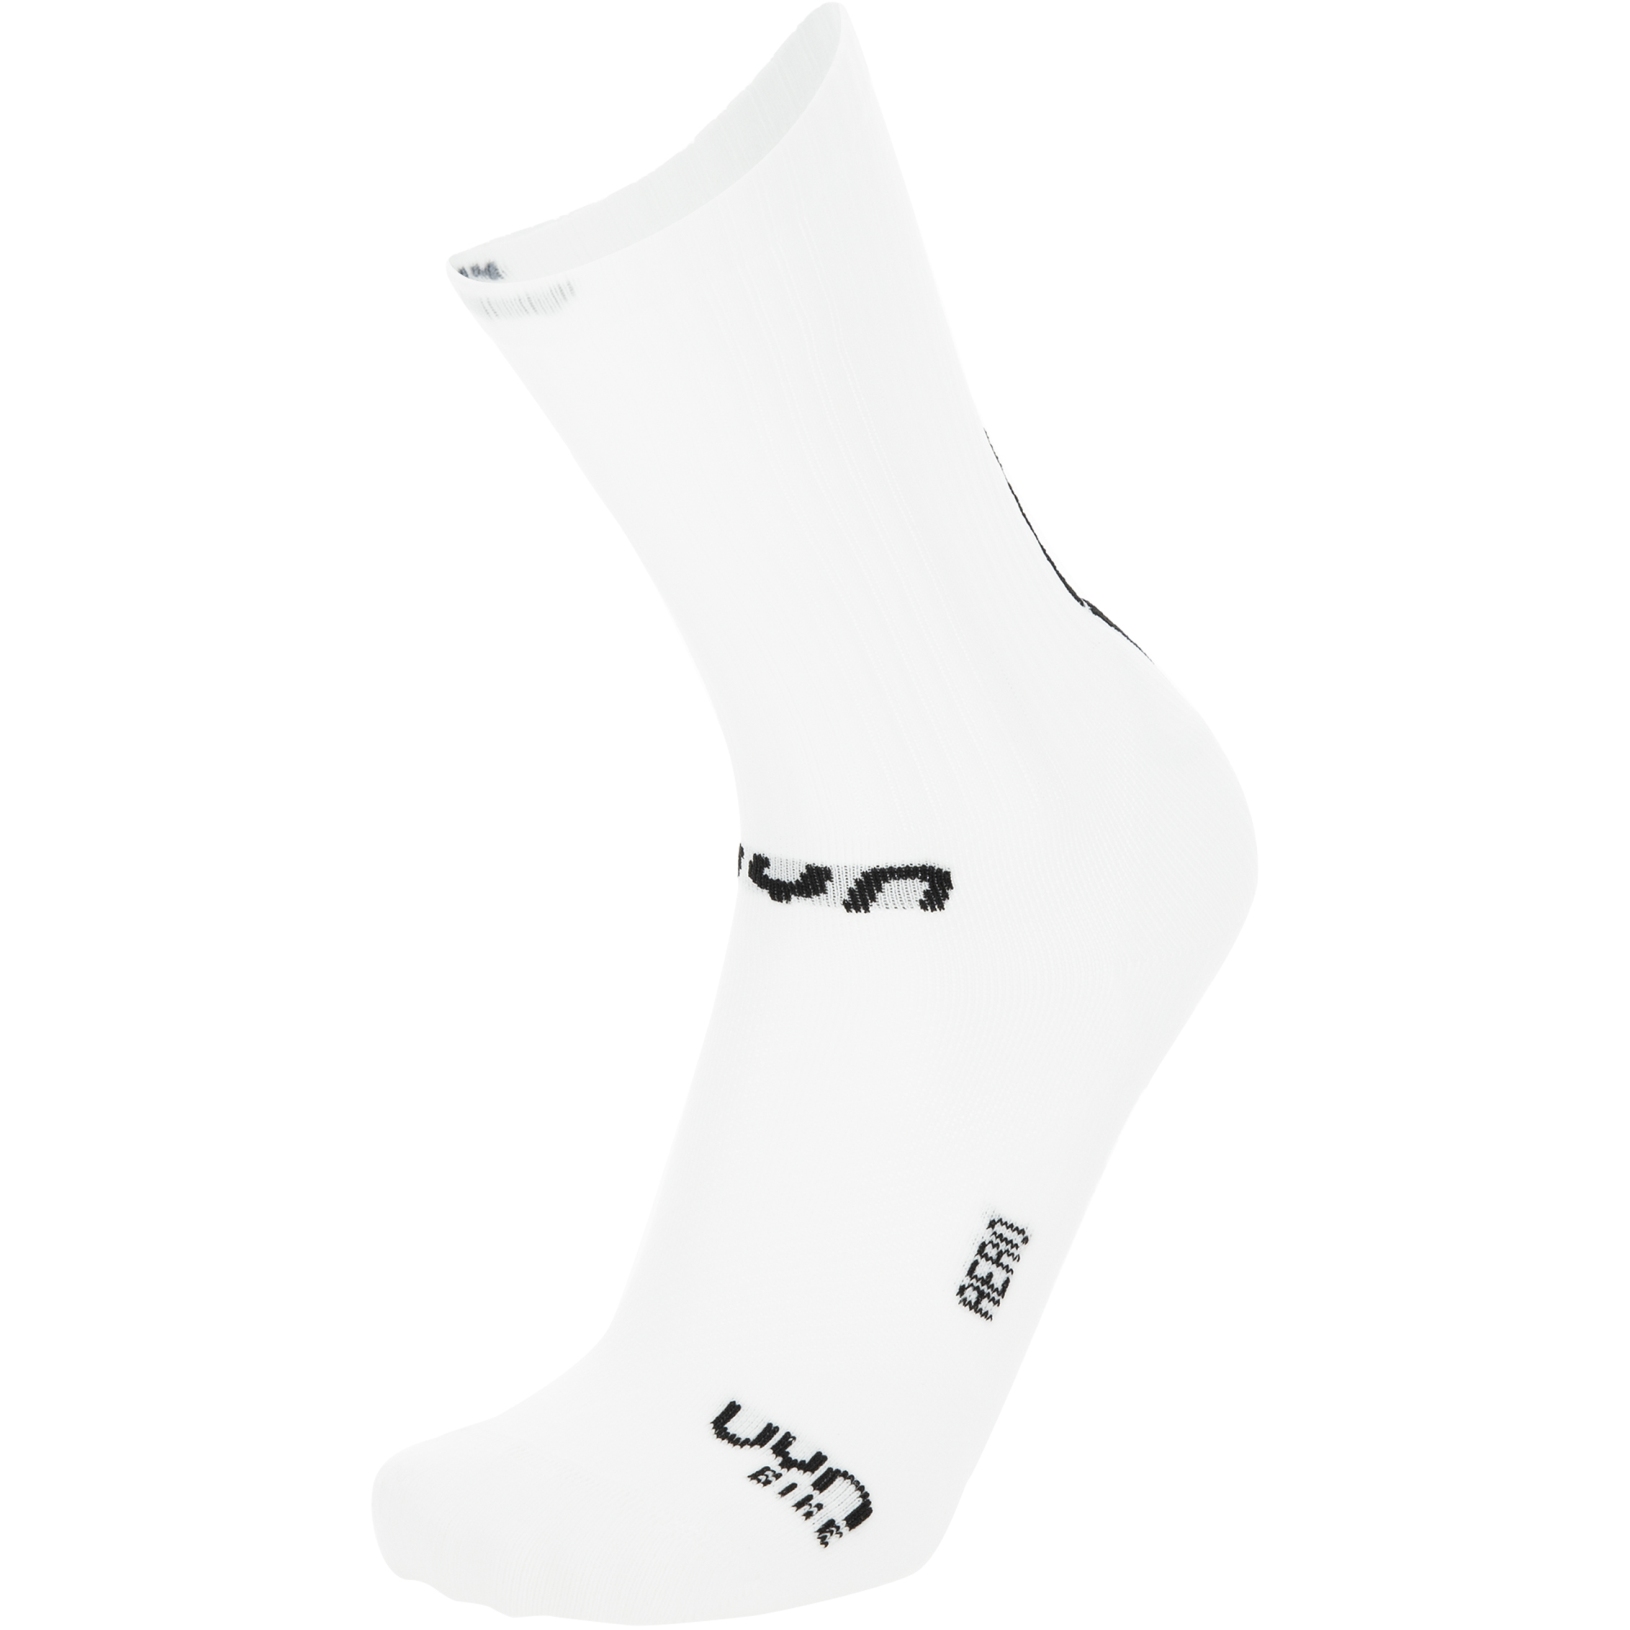 Produktbild von UYN Cycling Aero Socken - Weiß/Schwarz